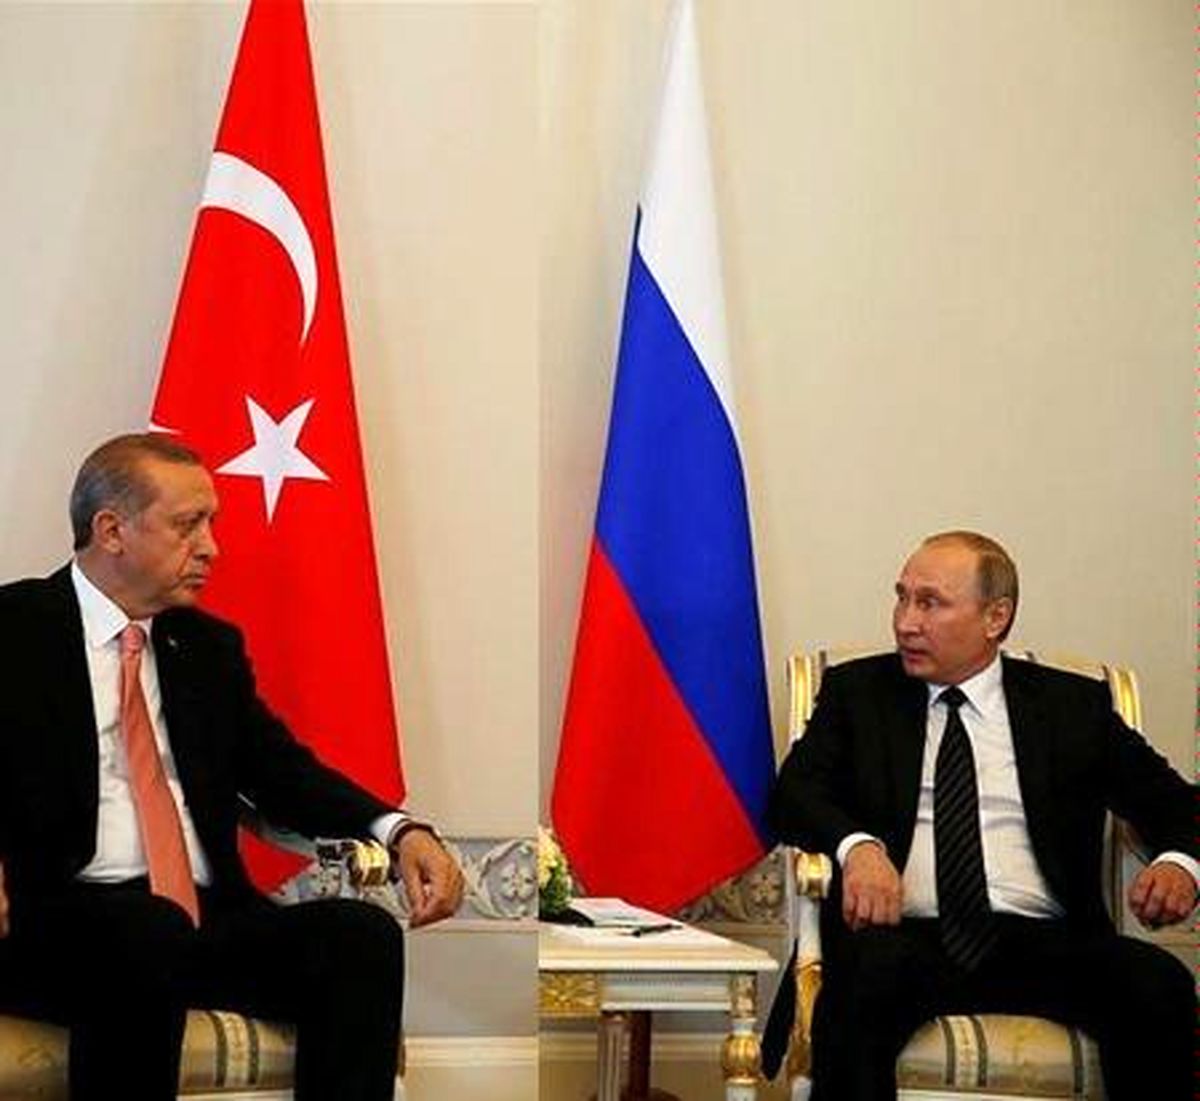 دیدار "رجب طیب اردوغان" با "ولادیمیر پوتین" در روسیه